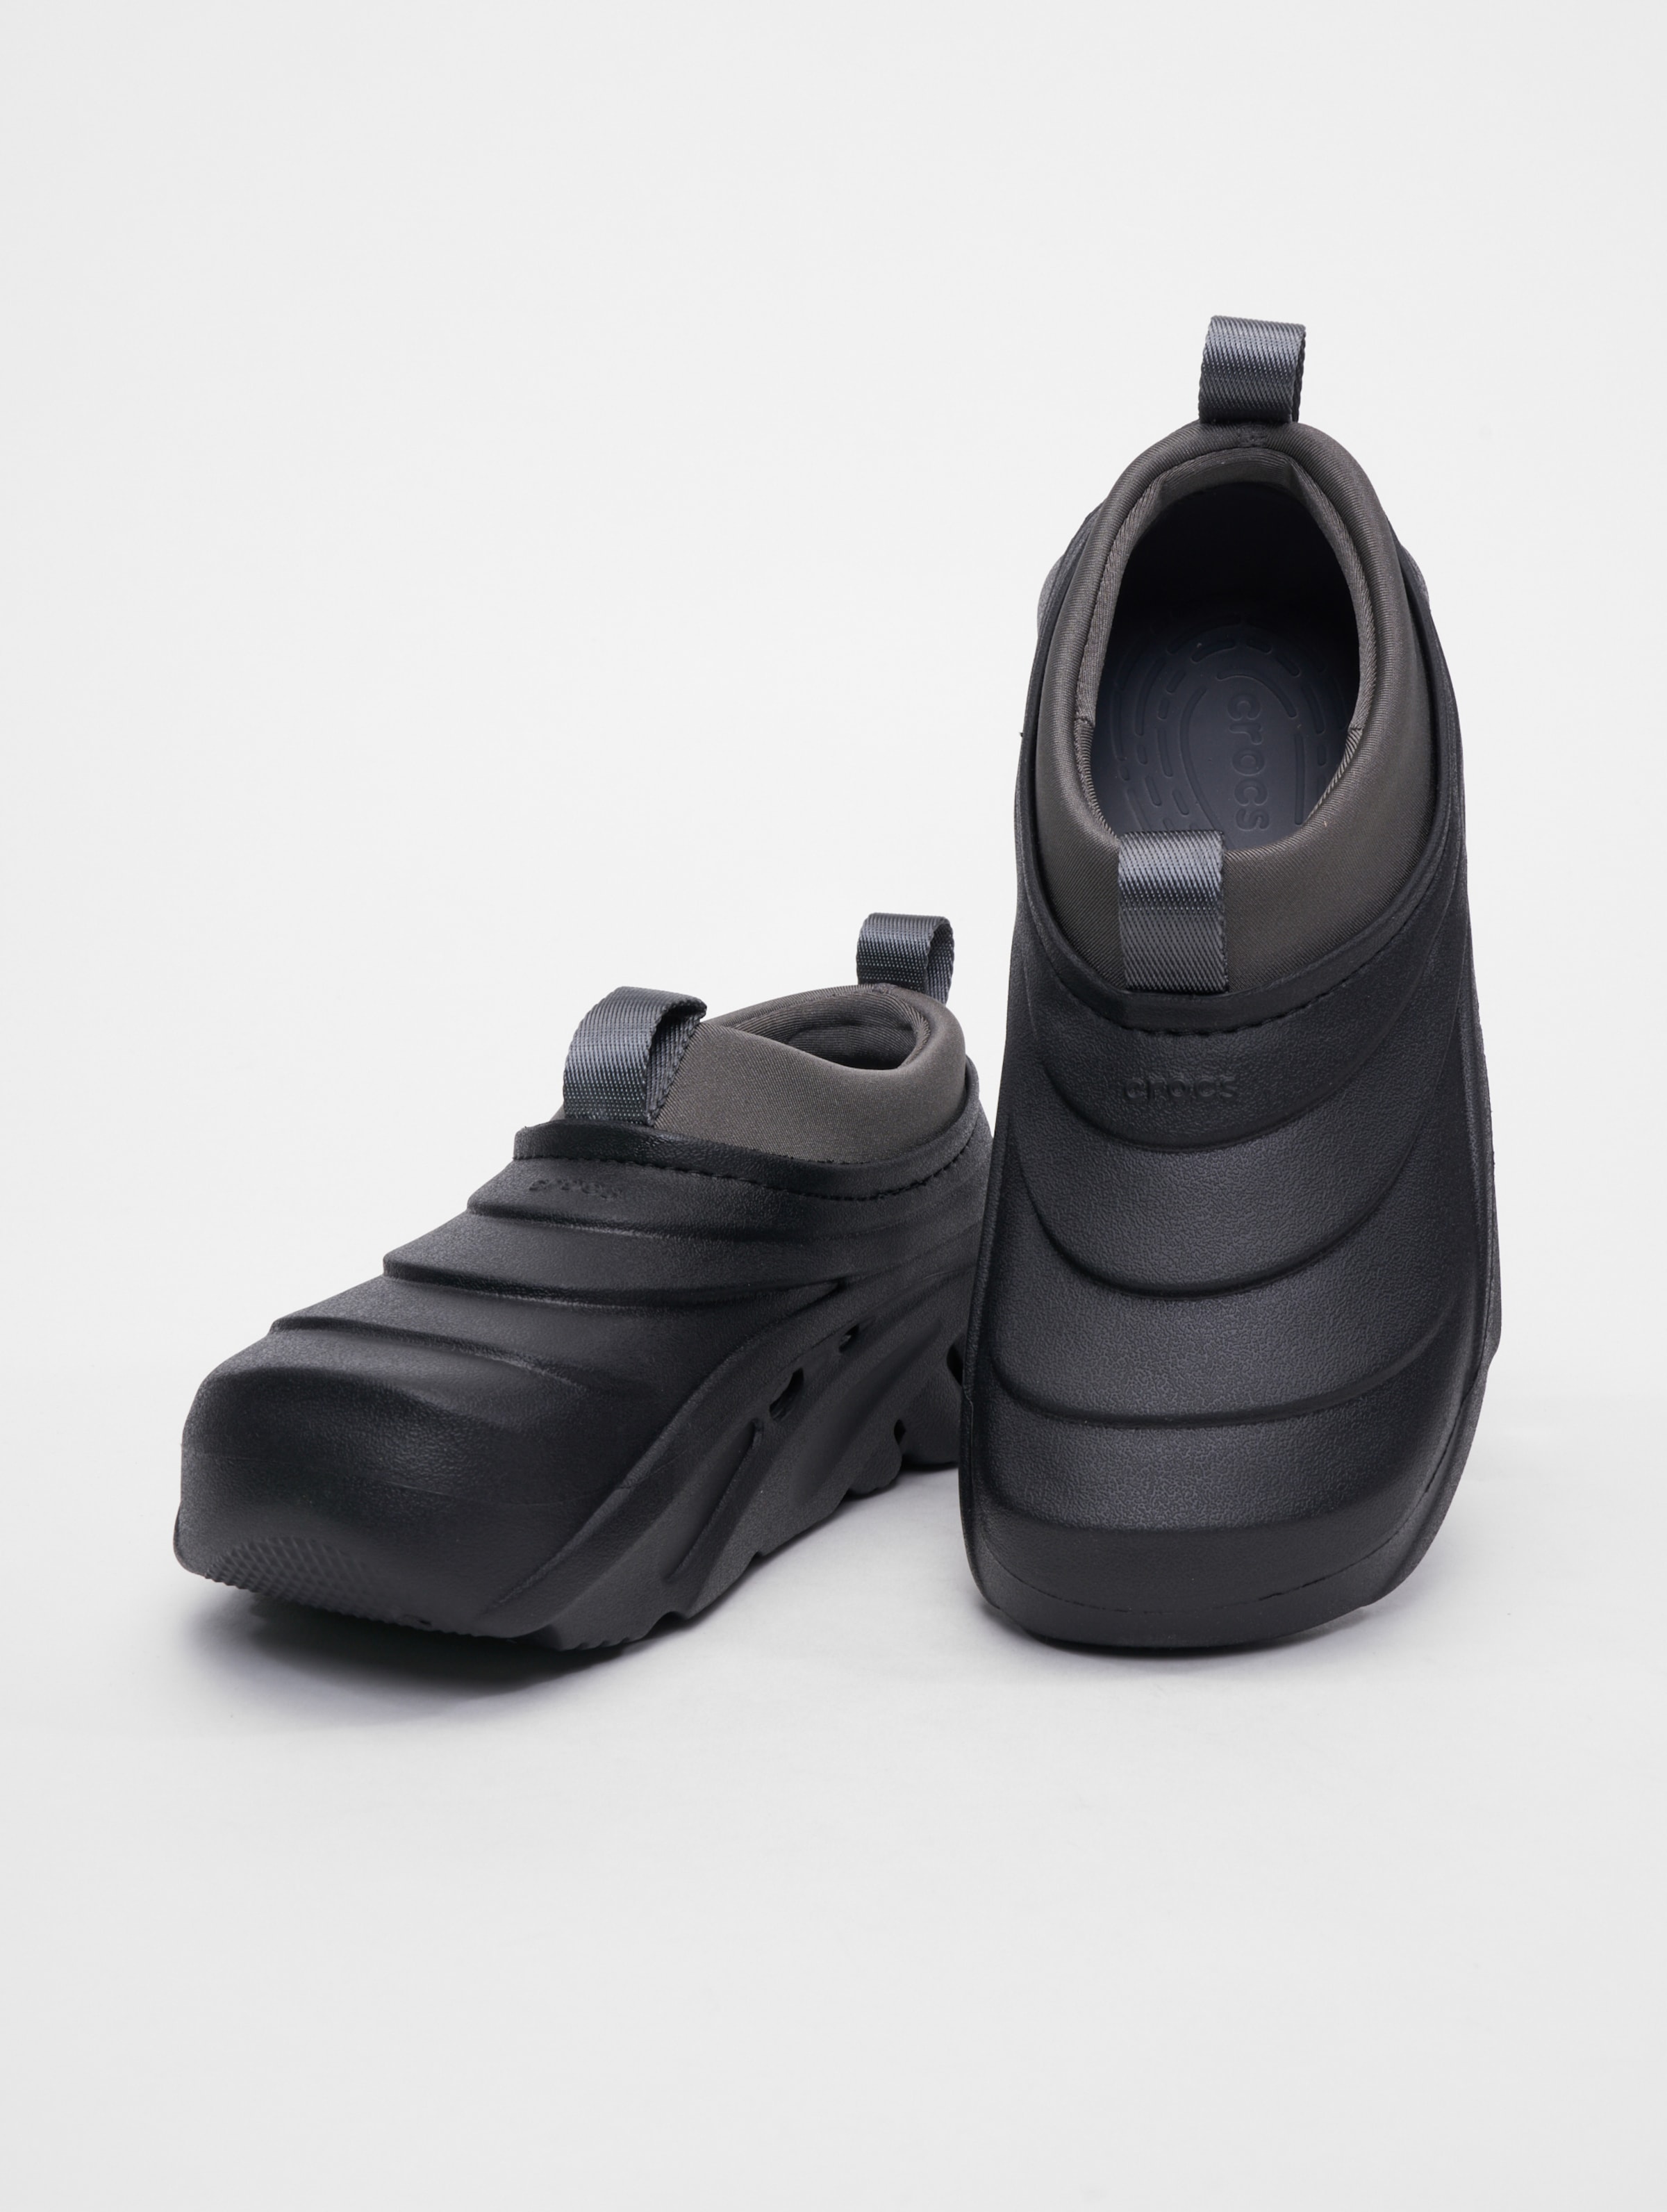 Crocs Echo Storm Sneakers Frauen,Männer,Unisex op kleur zwart, Maat 4243